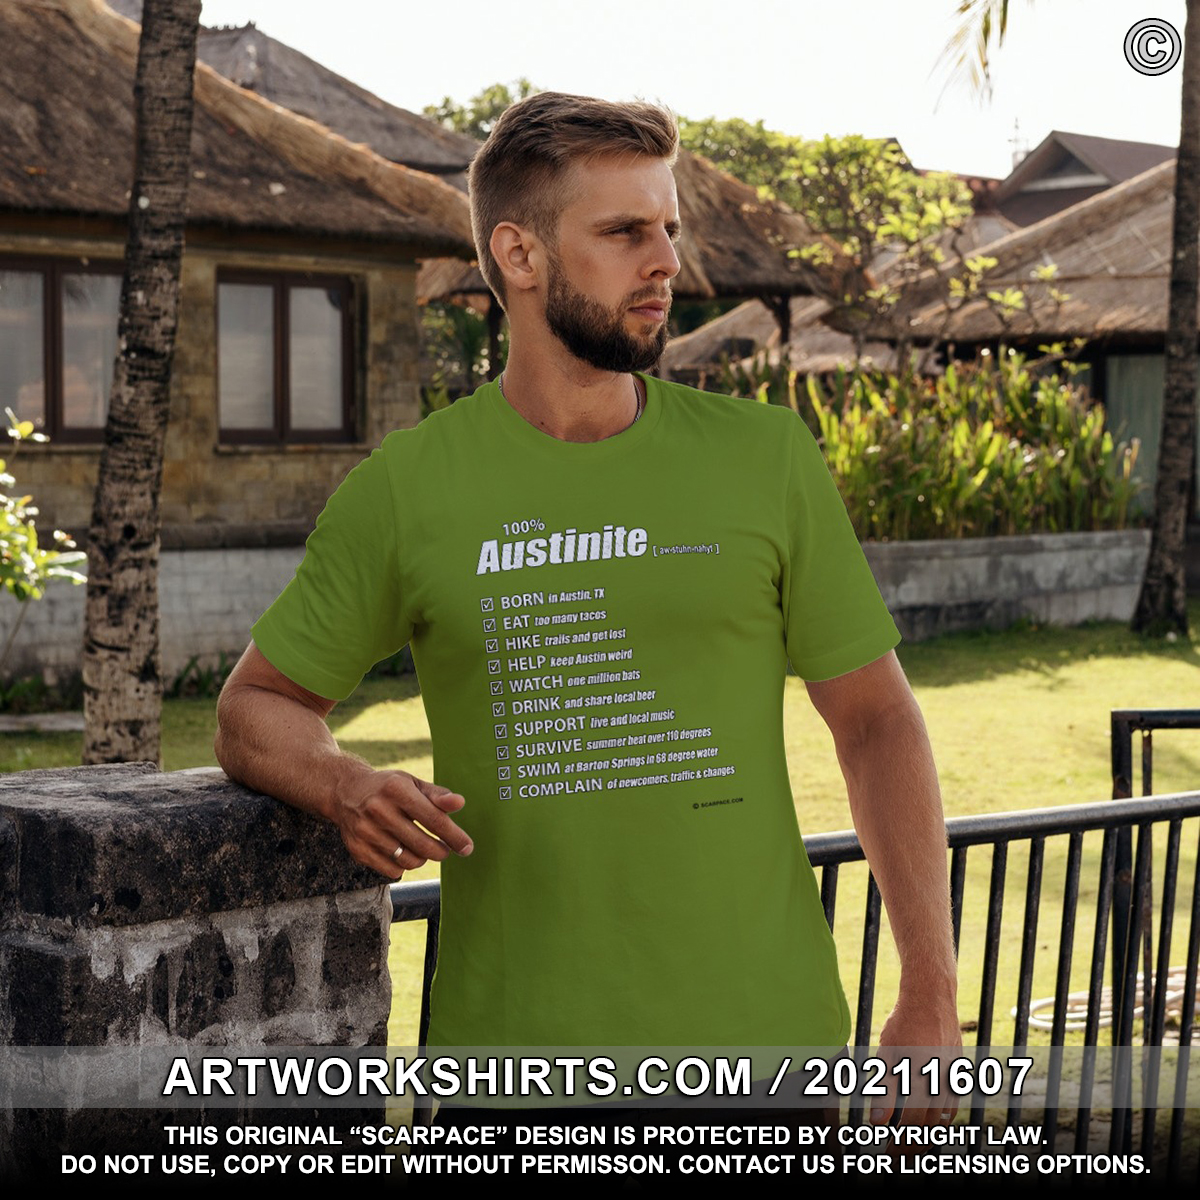 100% Austinite - Austin, Texas - T-Shirt (on Amazon)